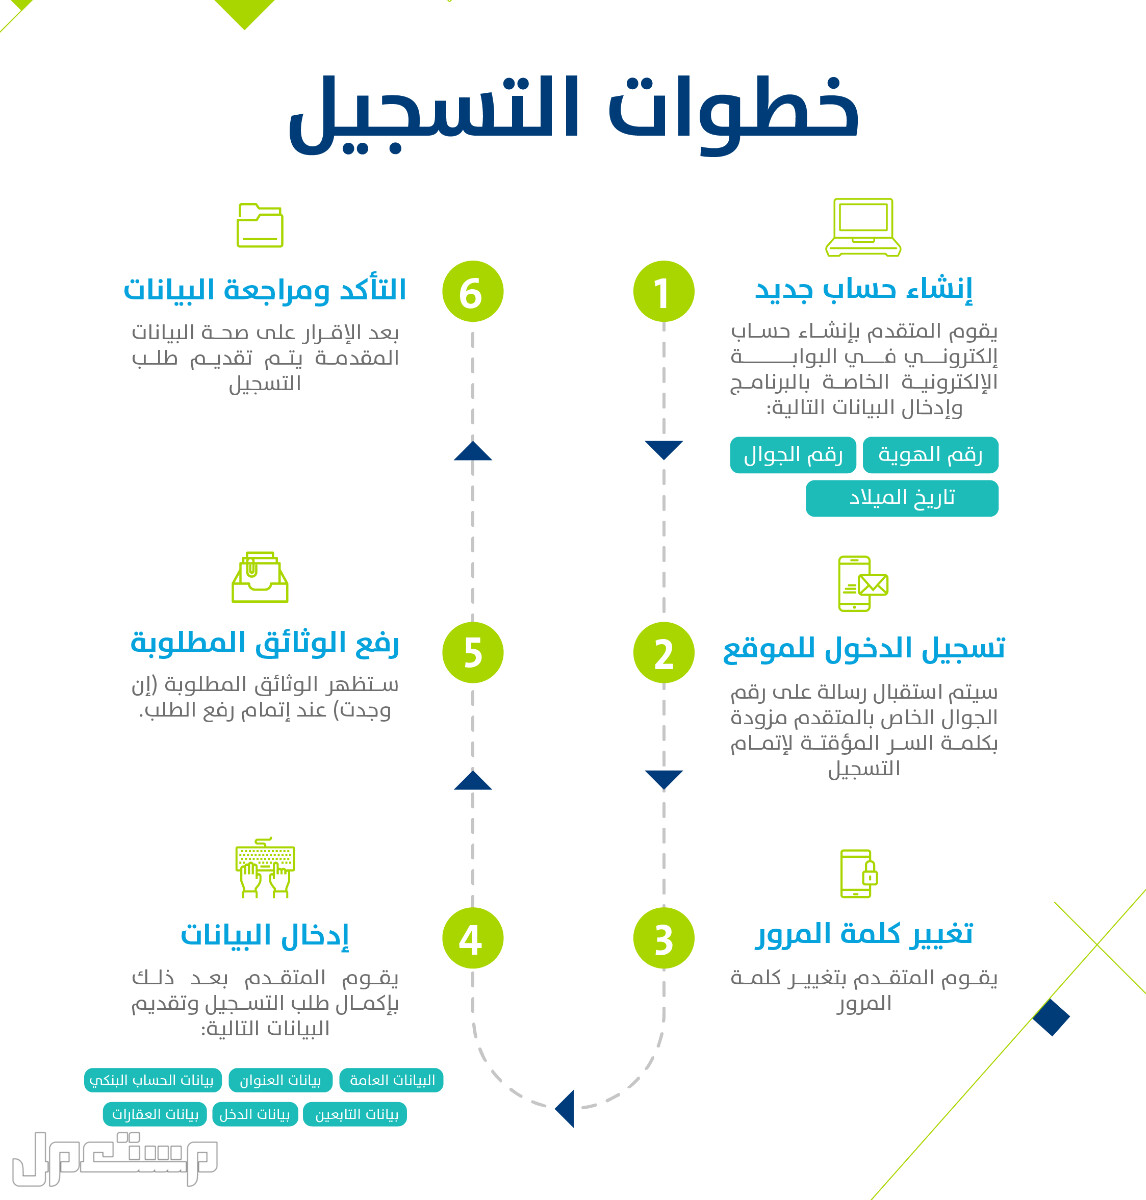 تعرف على كيفية التسجيل في حساب المواطن عقب تمديد الدعم الإضافي 1444 بالخطوات في عمان خطوات التسجيل